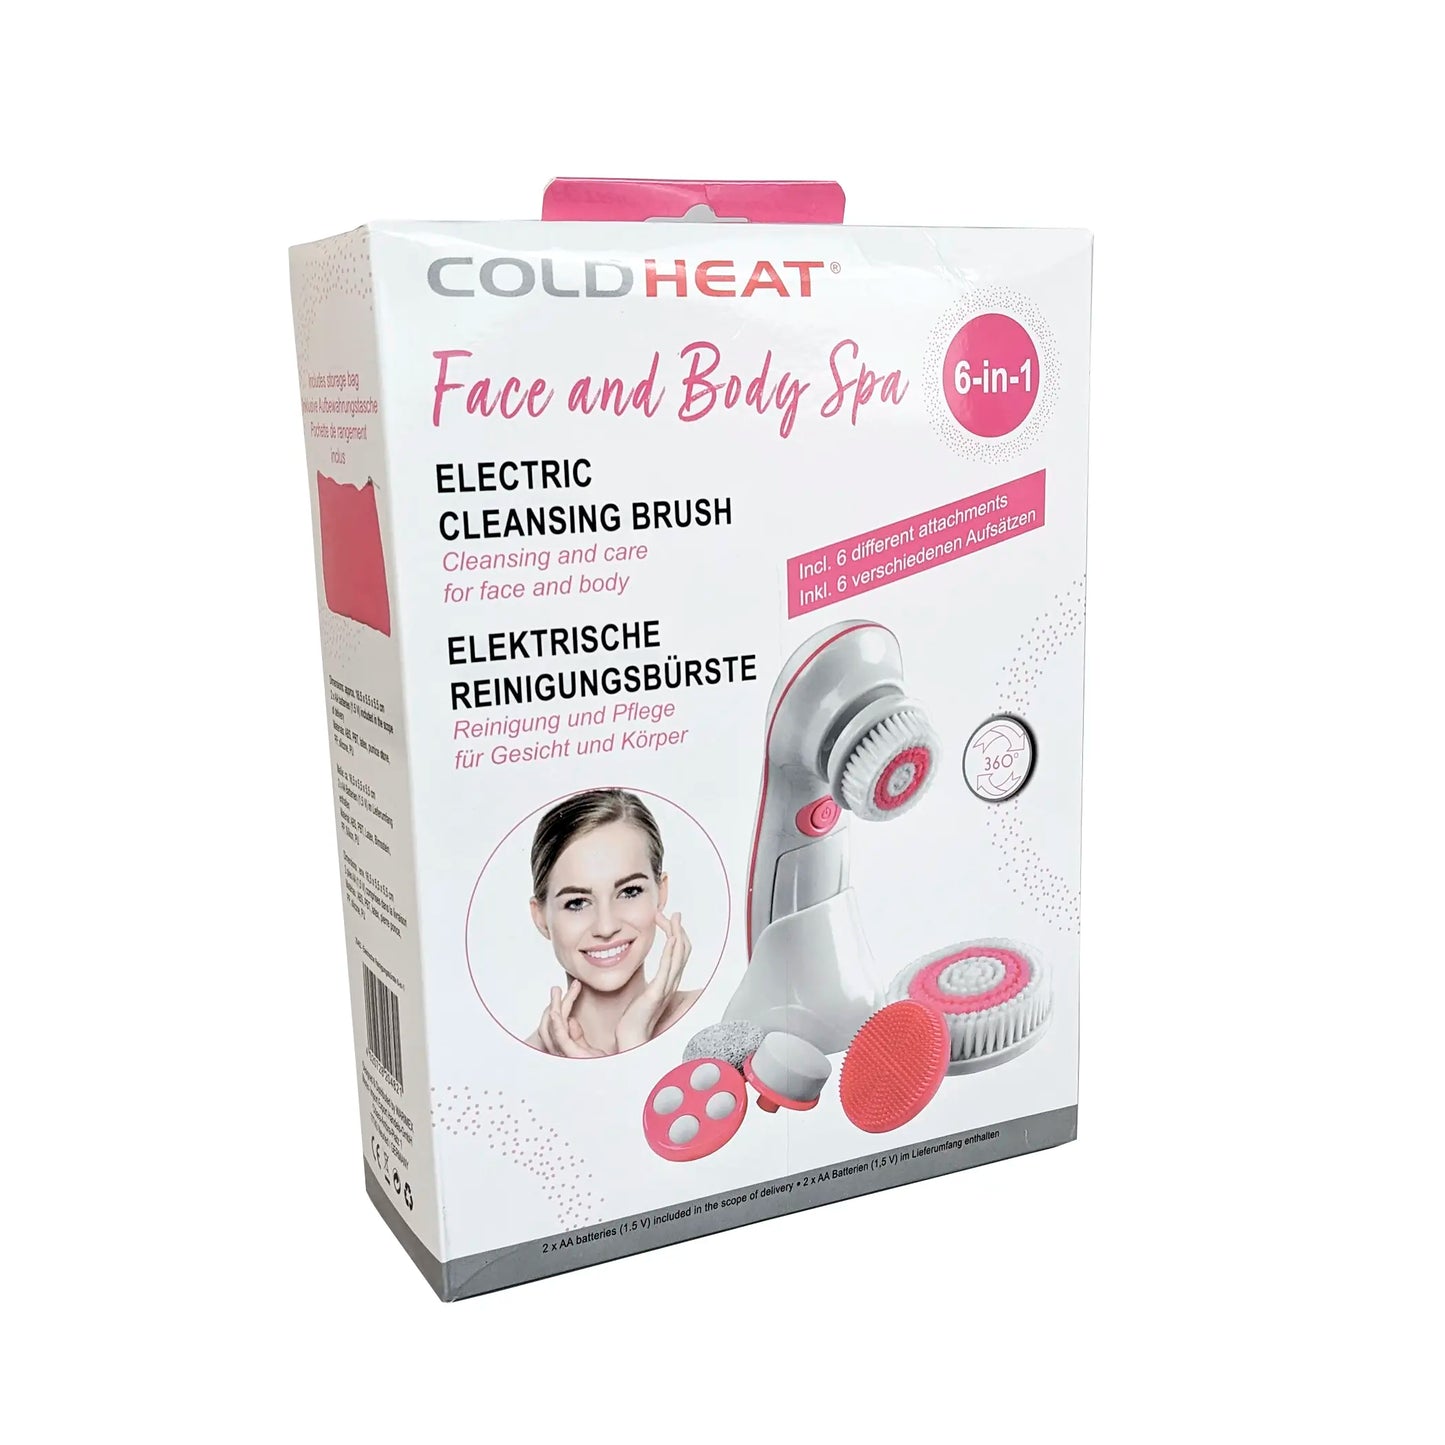 ColdHeat 6-in-1 Elektrische Reinigungsbürste für Gesicht und Körper